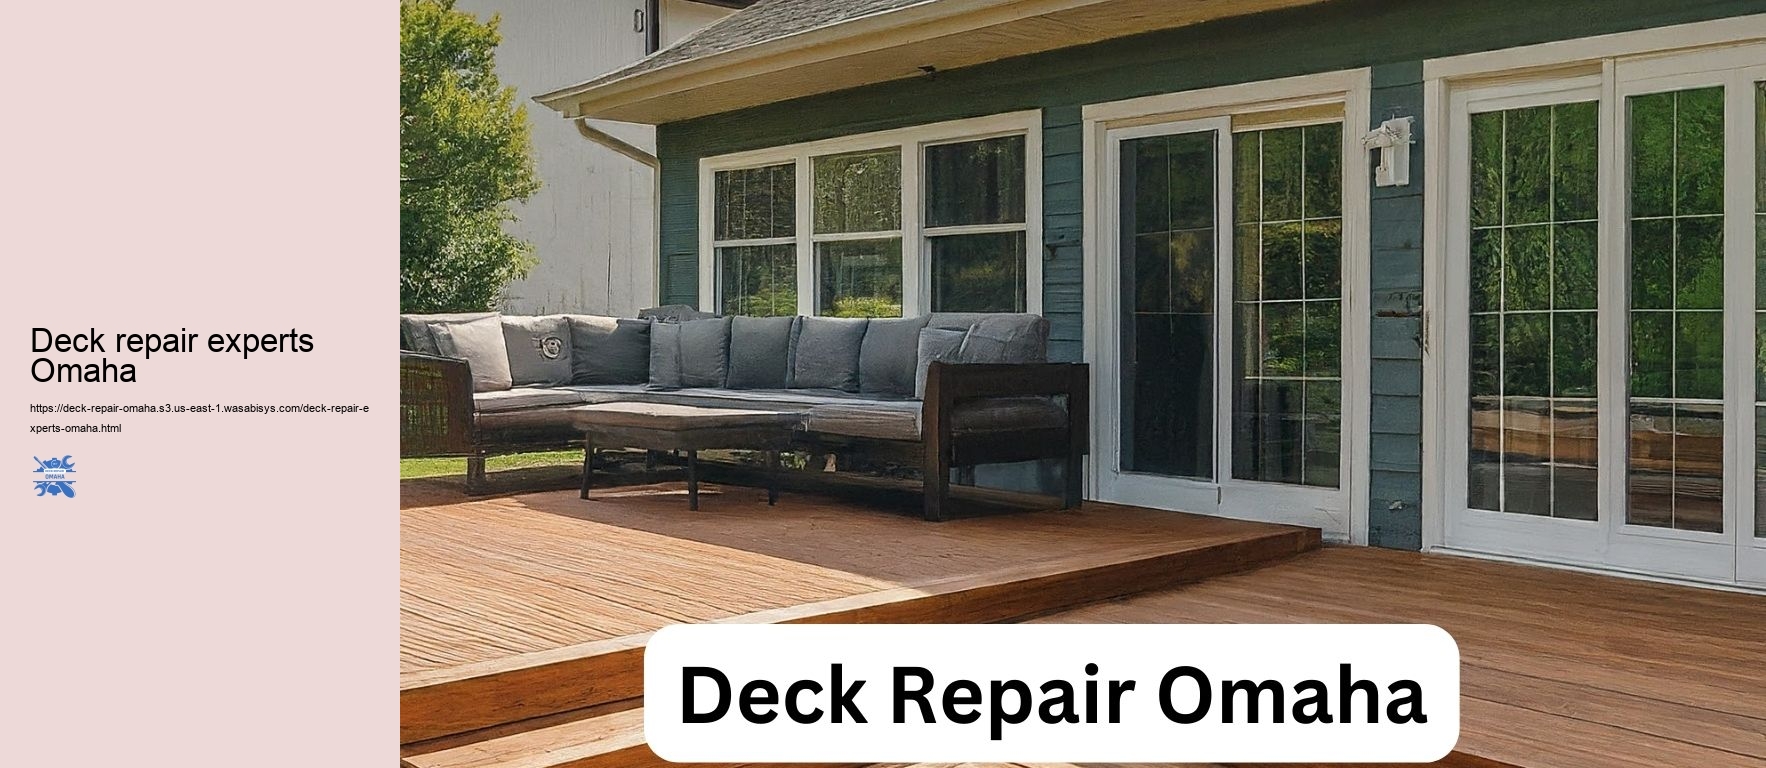 Deck repair experts Omaha